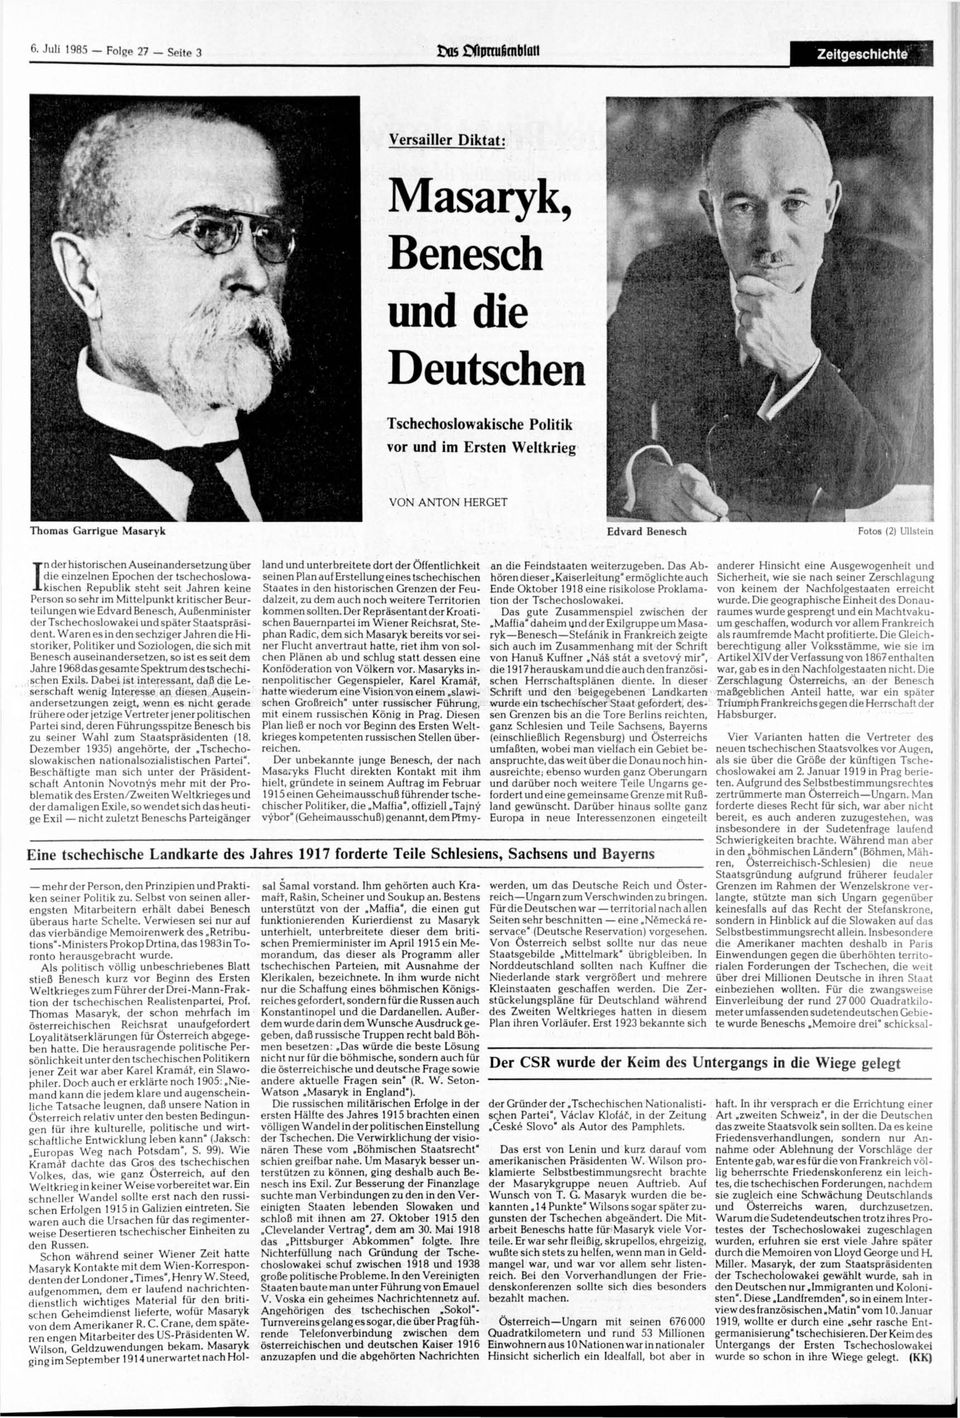 Mittelpunkt kritischer Beurteilungen wie Edvard Benesch, Außenminister der Tschechoslowakei und später Staatspräsident.